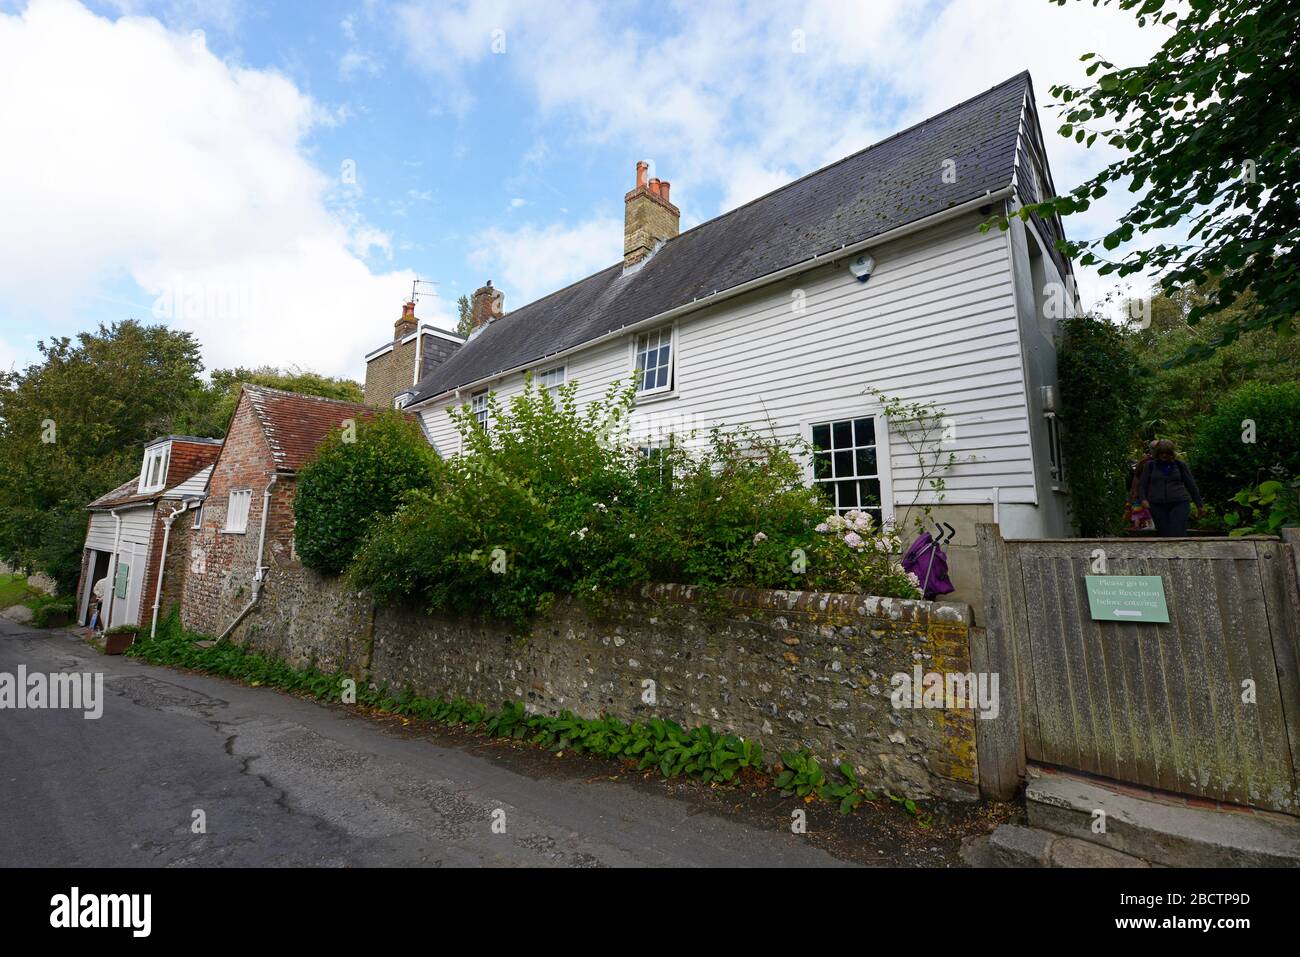 Vue sur la Maison de Monk, autrefois la maison de Virginia Woolf, depuis la route du village de Rodmell, East Sussex, Royaume-Uni, avec une poussette pourpre. Banque D'Images